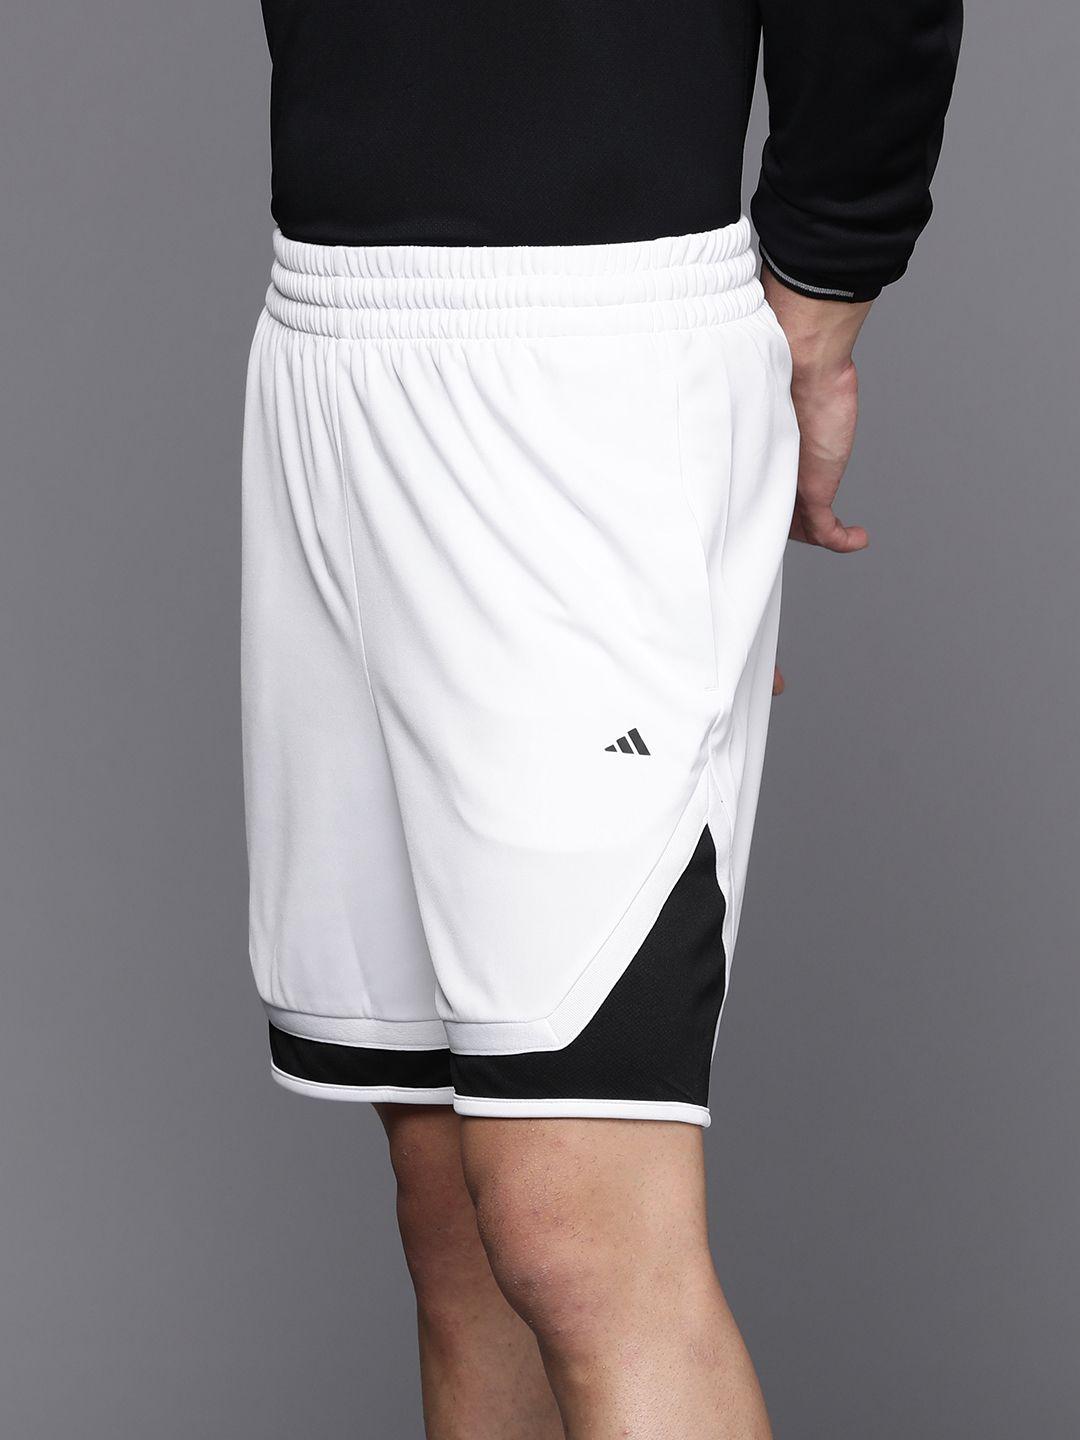 adidas men colourblocked sports shorts